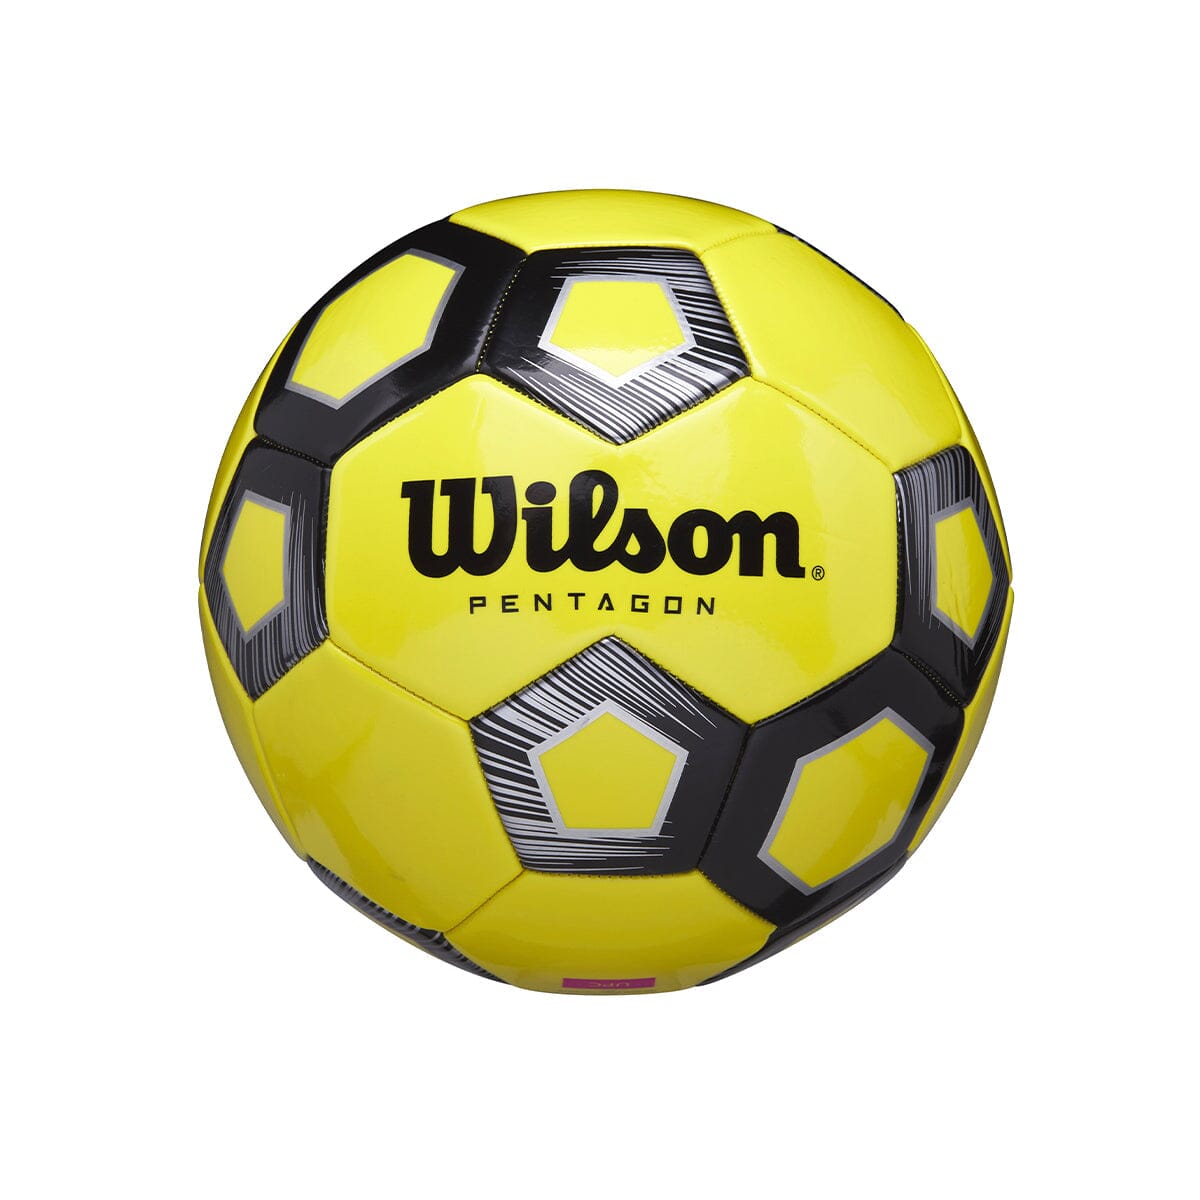 Wilson, Wilson Pentagon Soccer Ball - 12 Packs